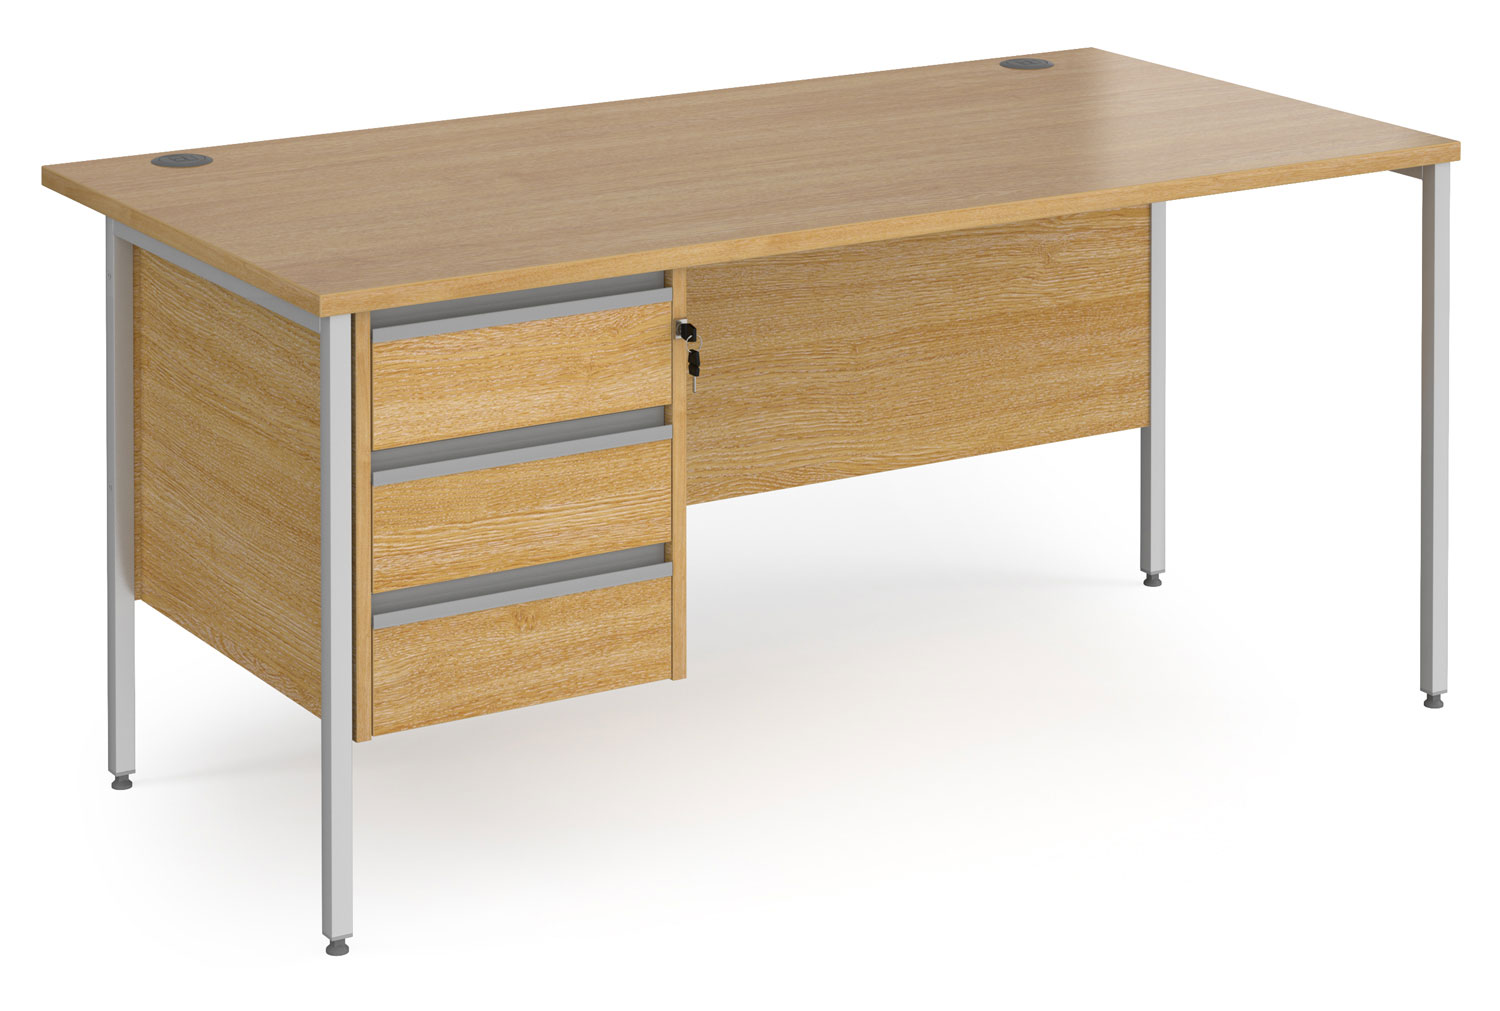 Value Line Classic+ Rectangular H-Leg Office Desk 3 Drawers (Silver Leg), 160wx80dx73h (cm), Oak, Fully Installed